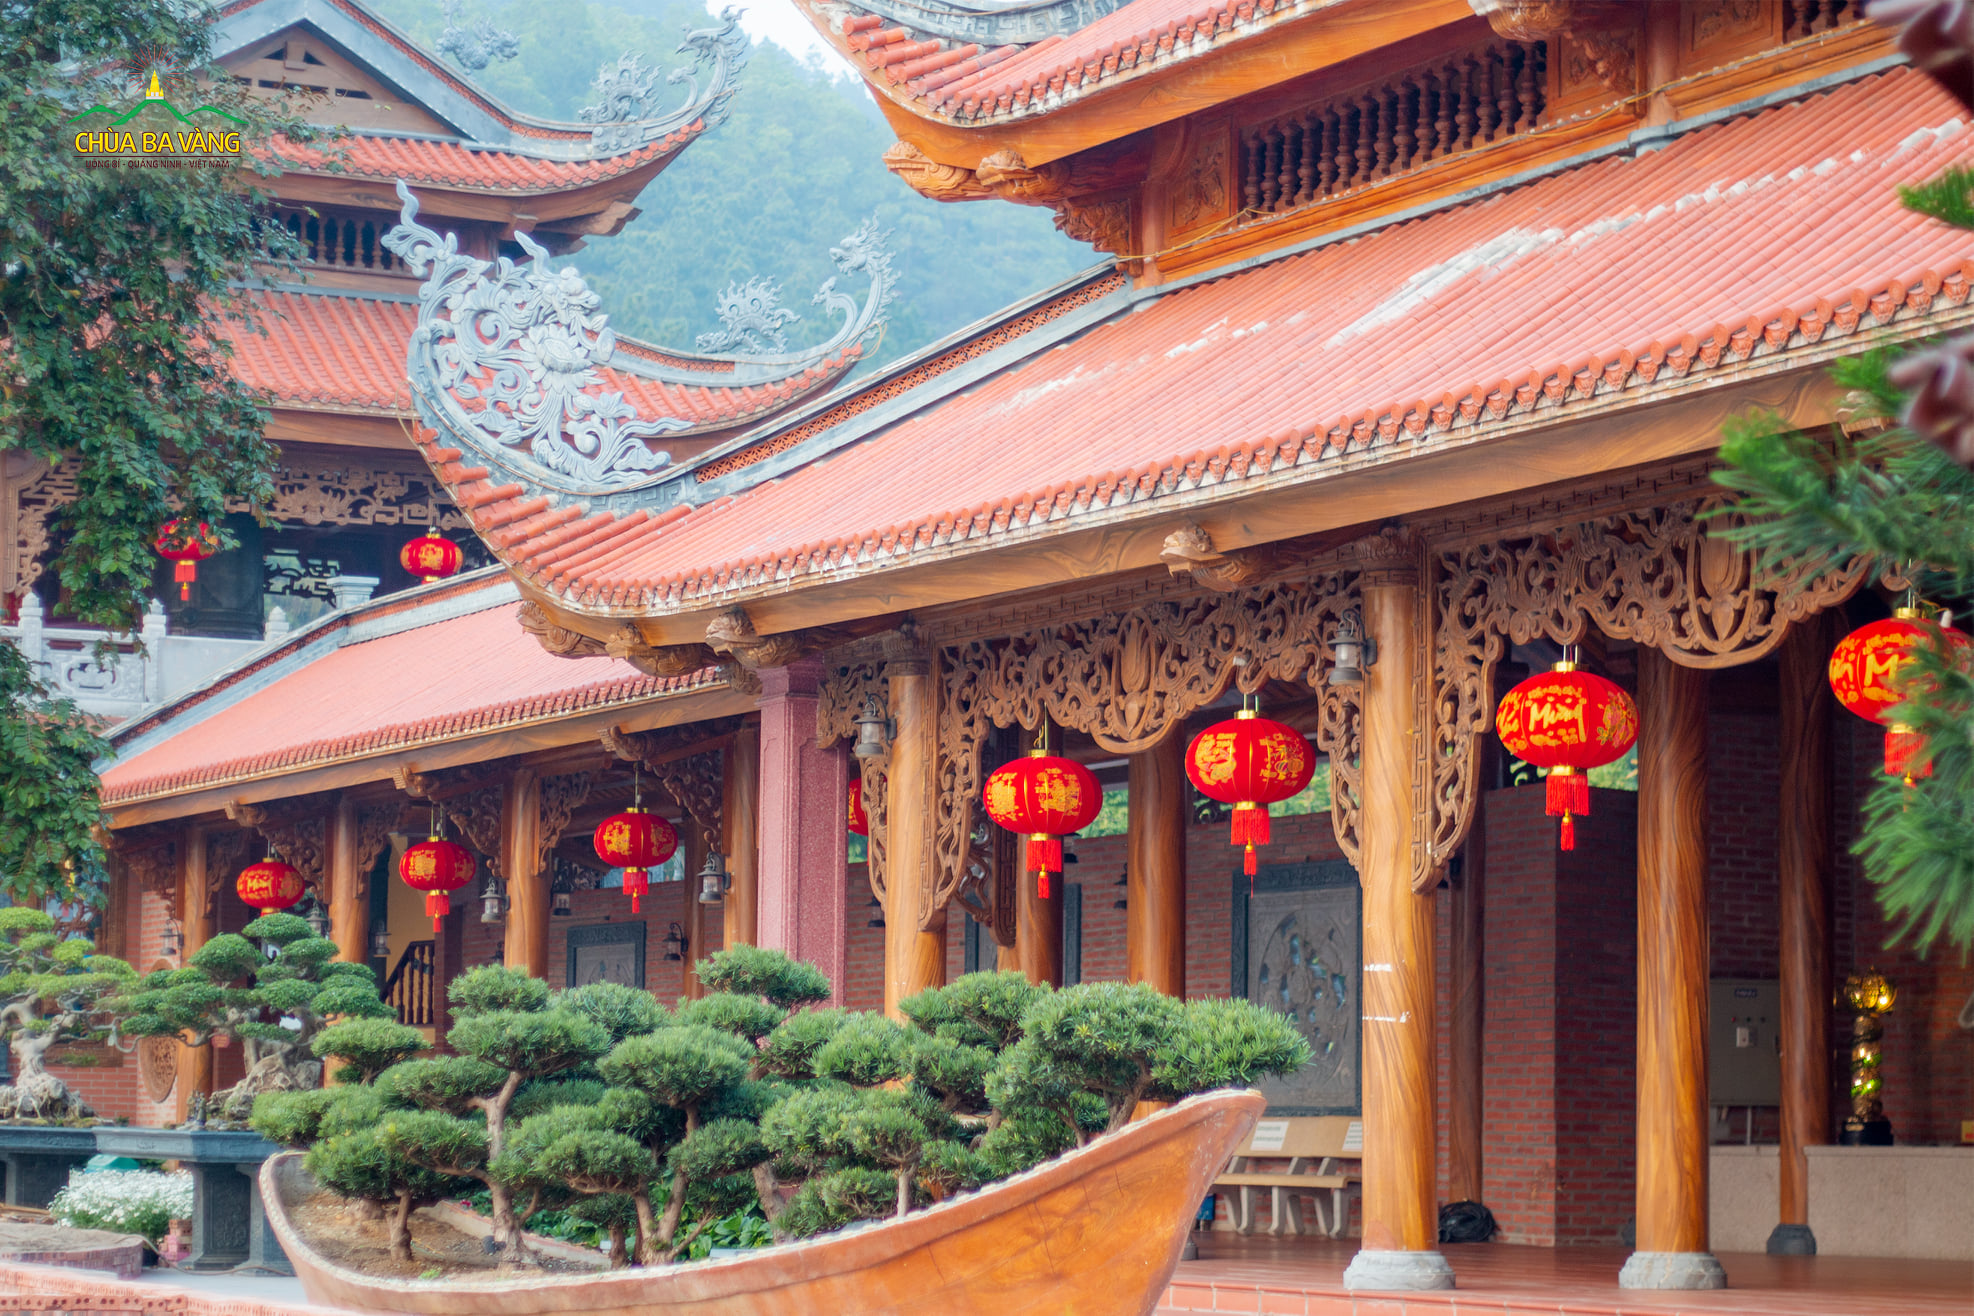 Những chiếc lồng đèn đỏ nổi bật dọc dãy hành lang La Hán tạo nên nét đặc trưng riêng cho chùa Ba Vàng